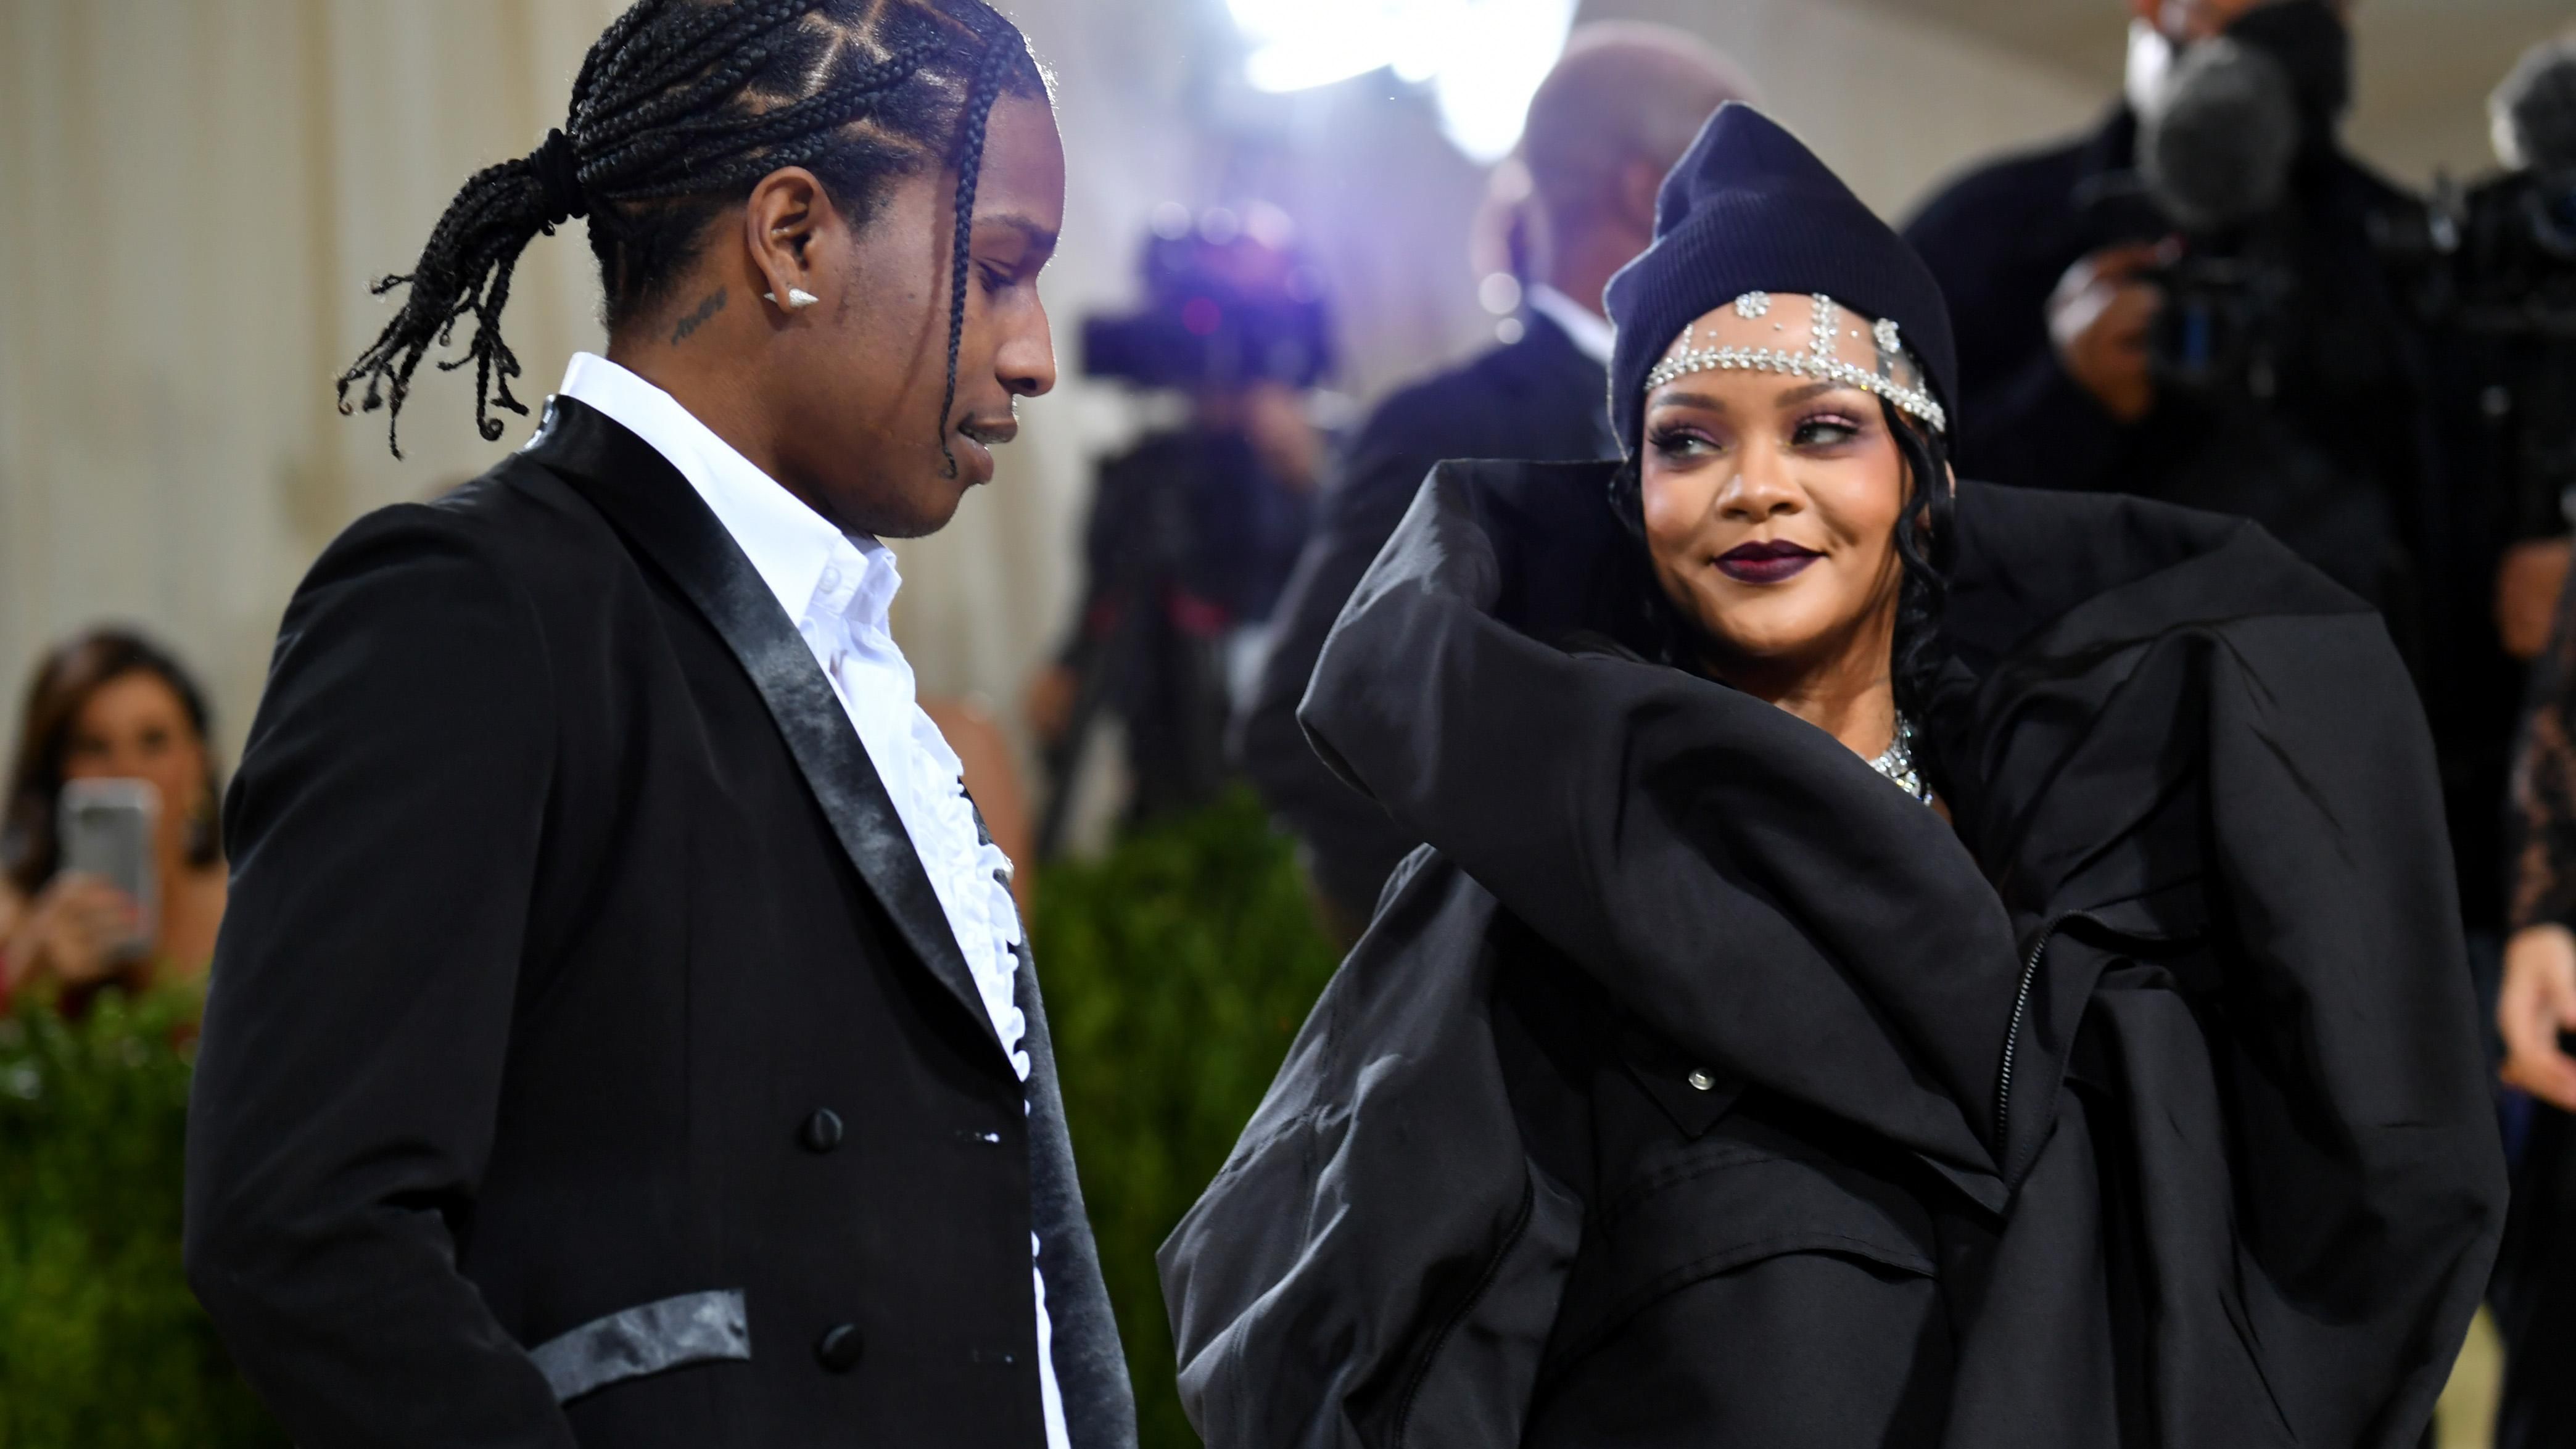 Ріанна та A$AP Rocky планують весілля у 2022 році, – інсайдер - Новини шоу-бізнесу - Showbiz